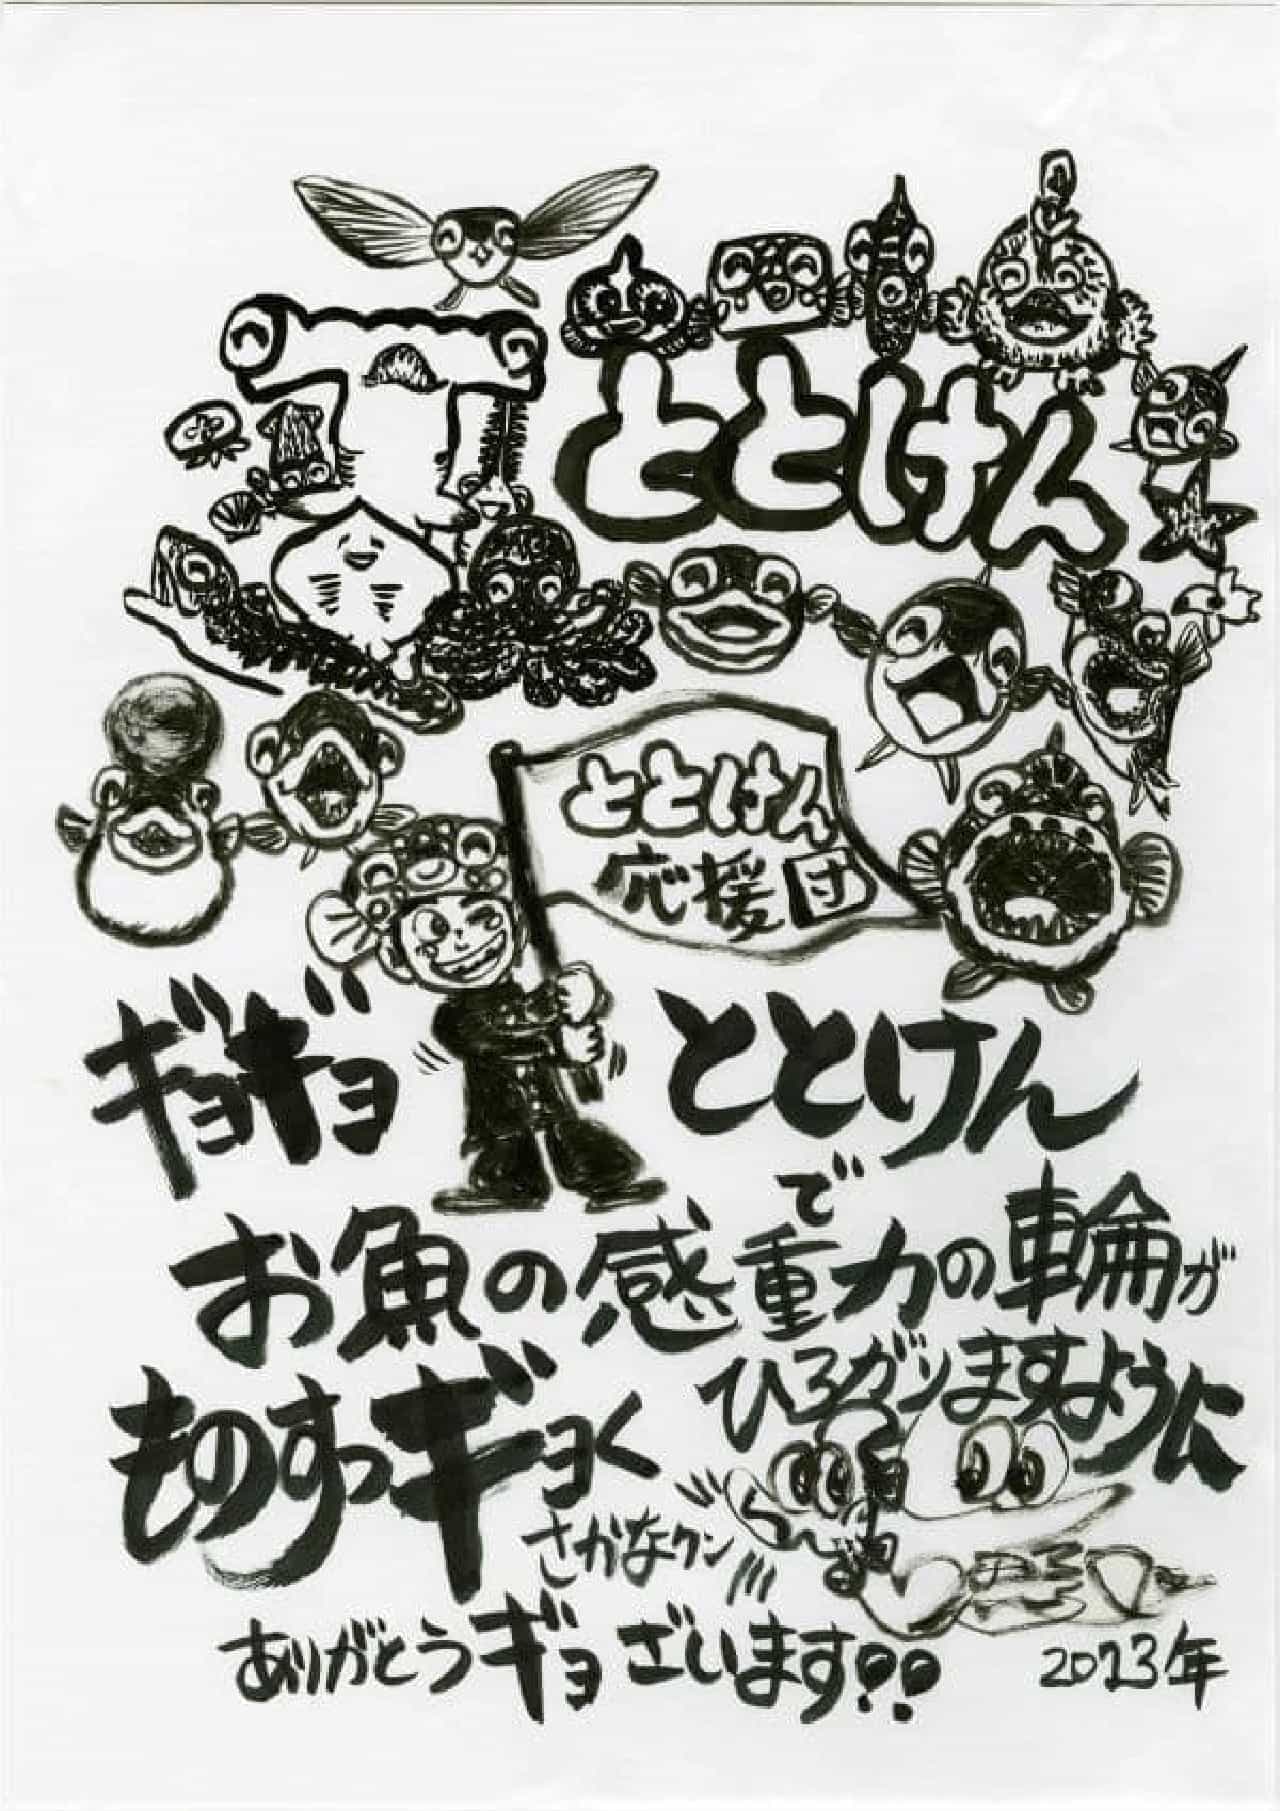 "Handwritten support message" from Sakana-kun